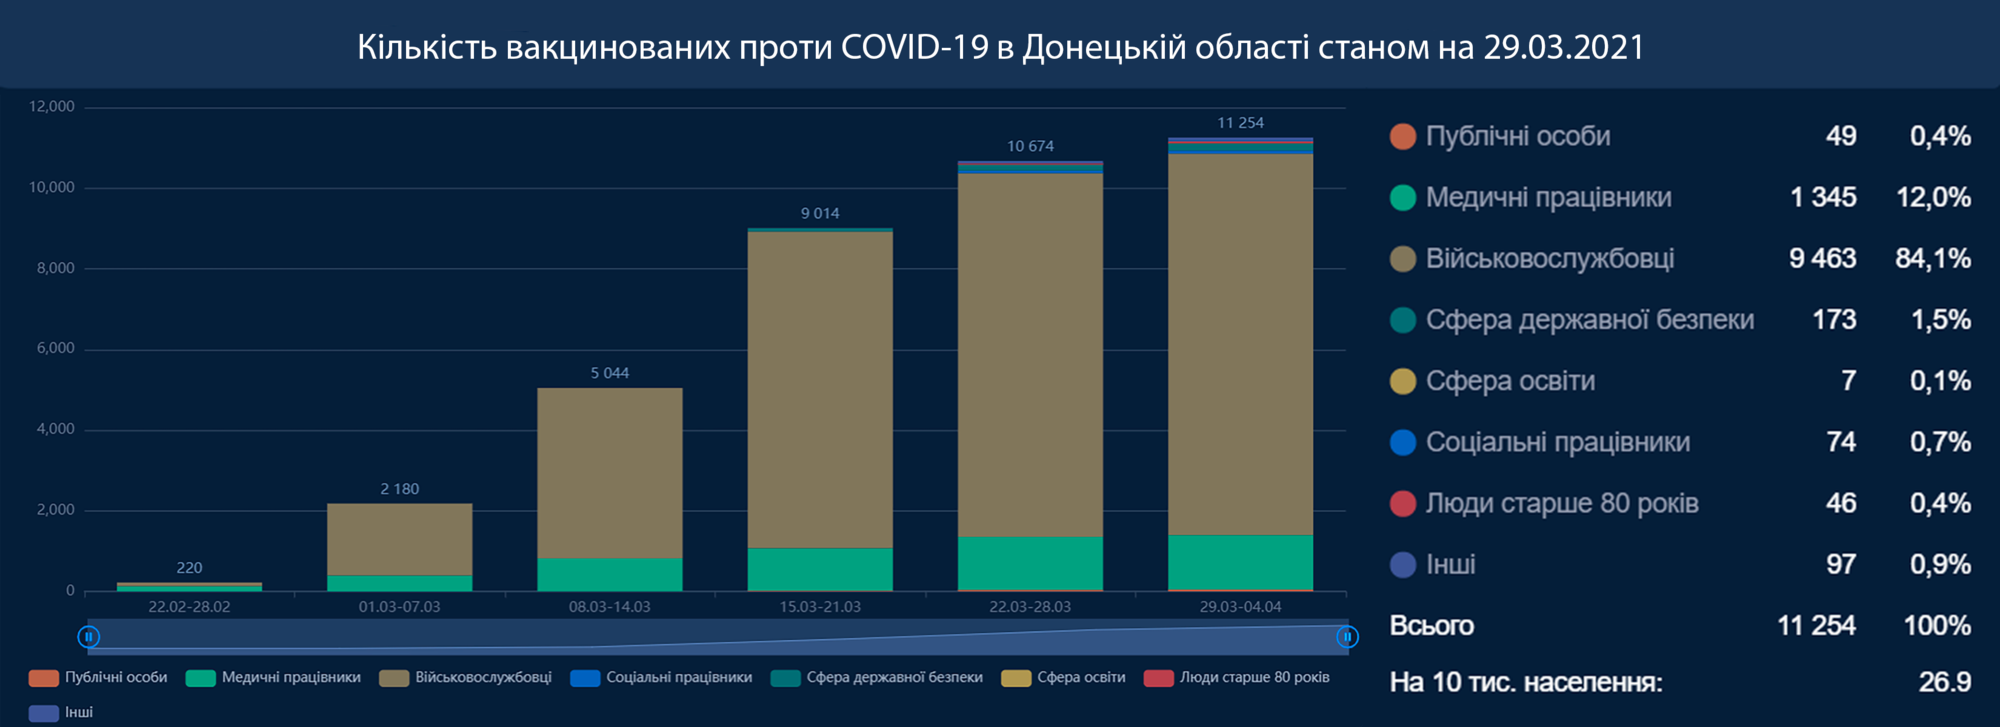 На Донеччині вакцинувалися від COVID-19 найменше медиків — трохи більше ніж 1300